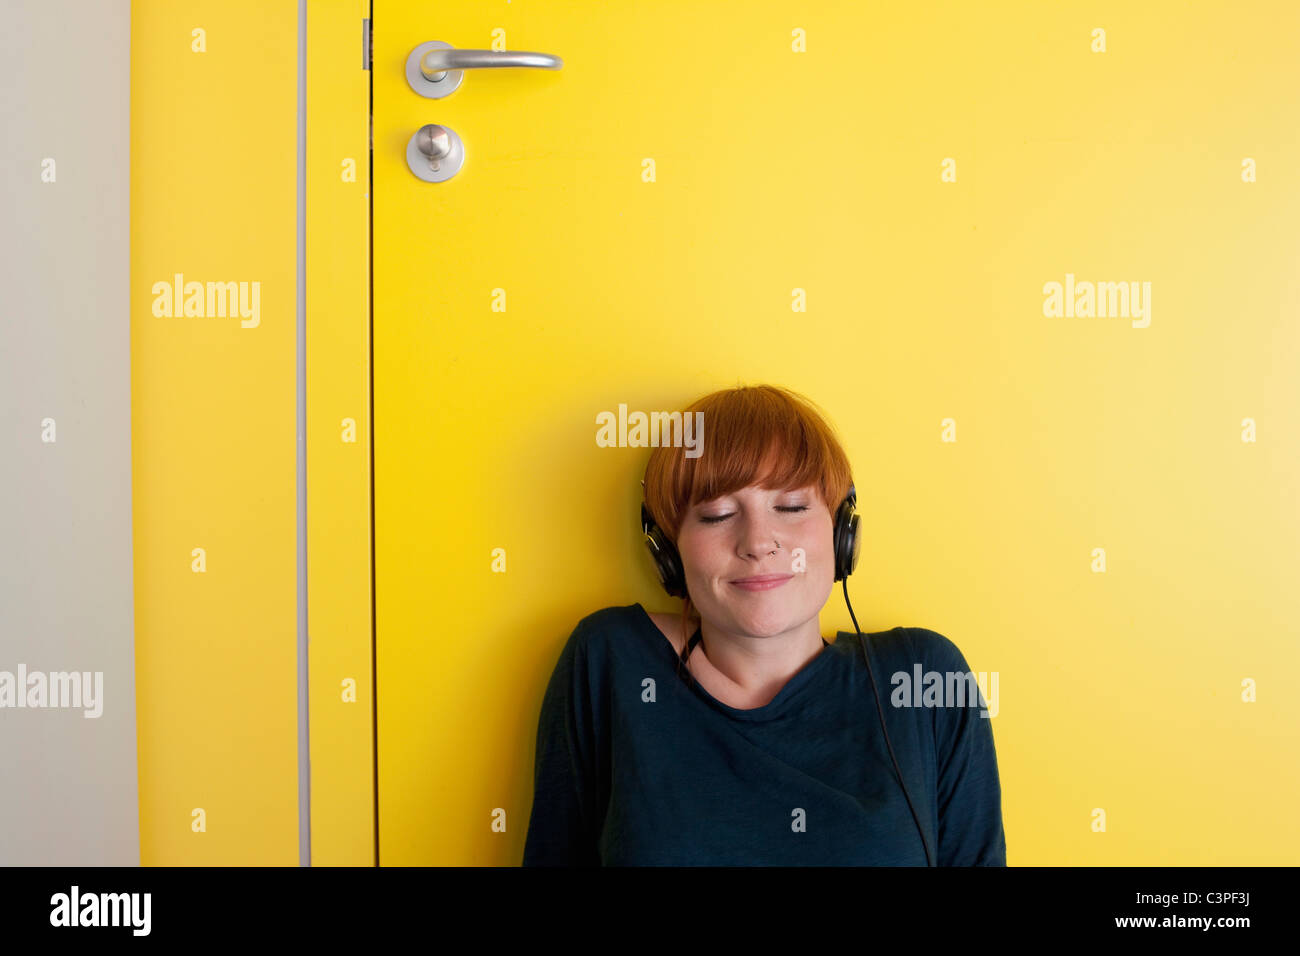 Germania, Lipsia, giovane donna seduta e ascolto di musica in spogliatoio Foto Stock